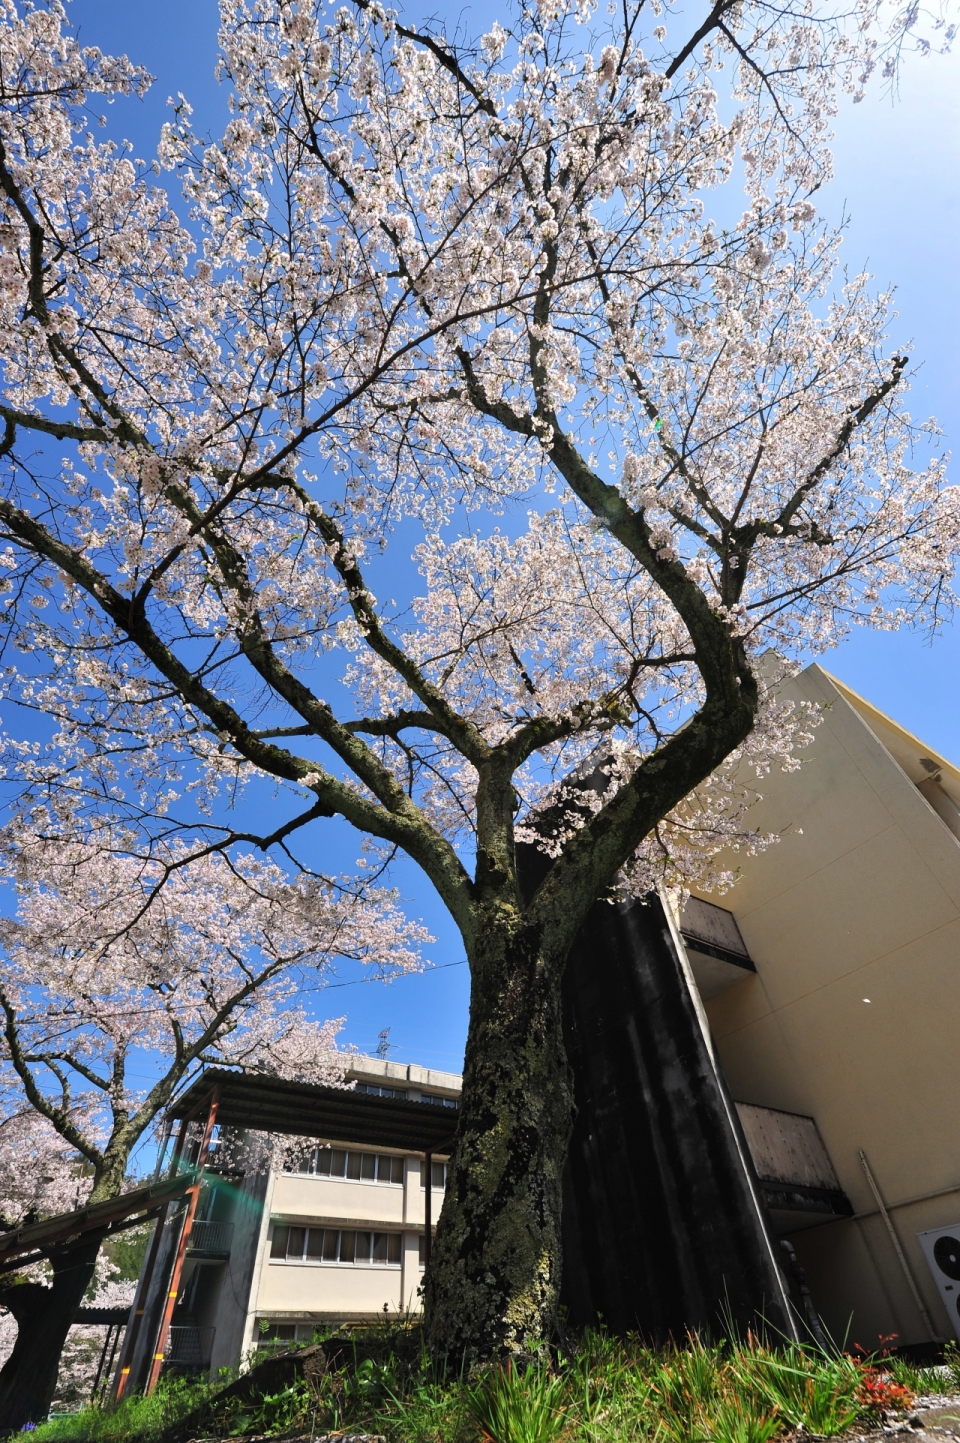 竖立在房屋街道旁边的樱花树